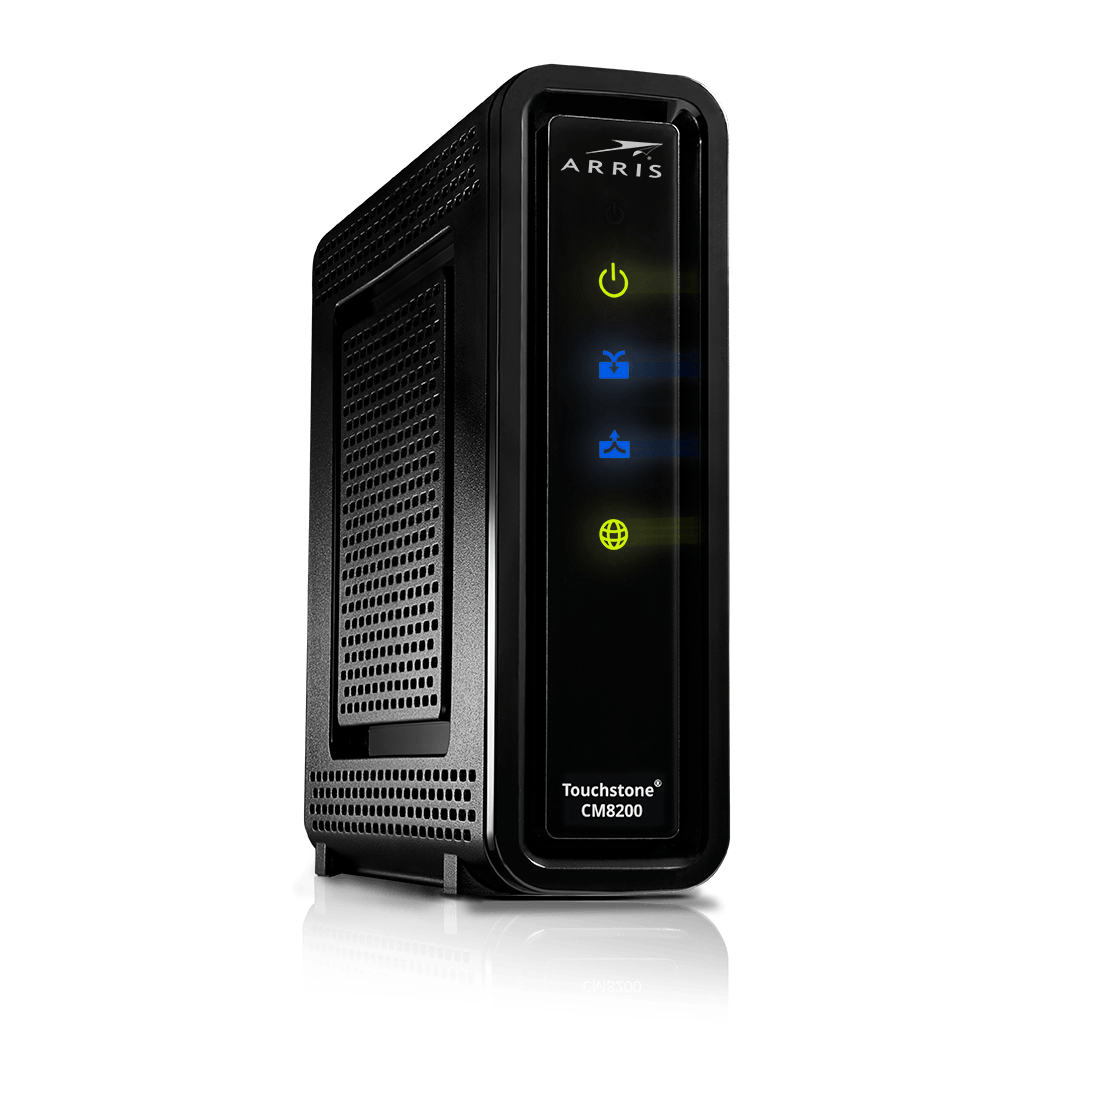 NBN HFC Connection Box/Arris Touchstone CM8200B Cable Modem Image 1